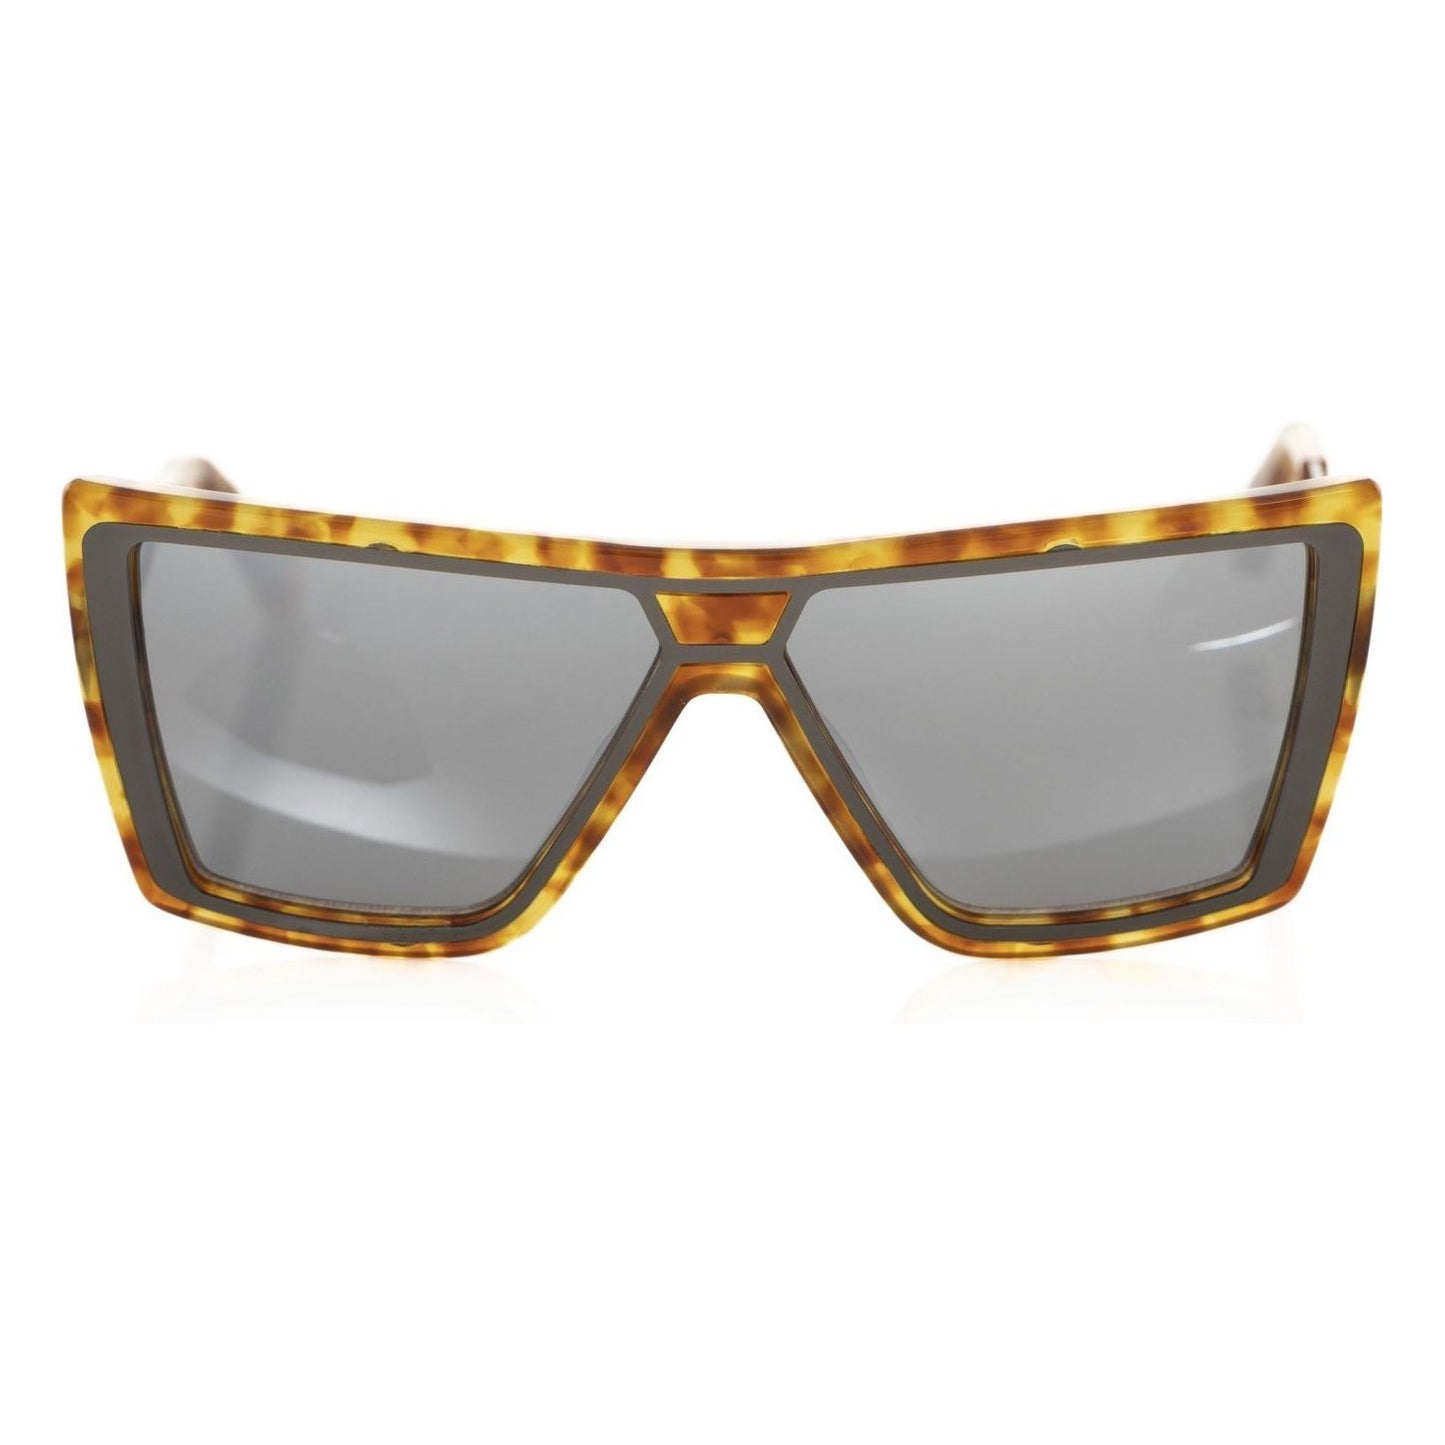 Chic Tortoise Shell Square Sunglasses Frankie Morello